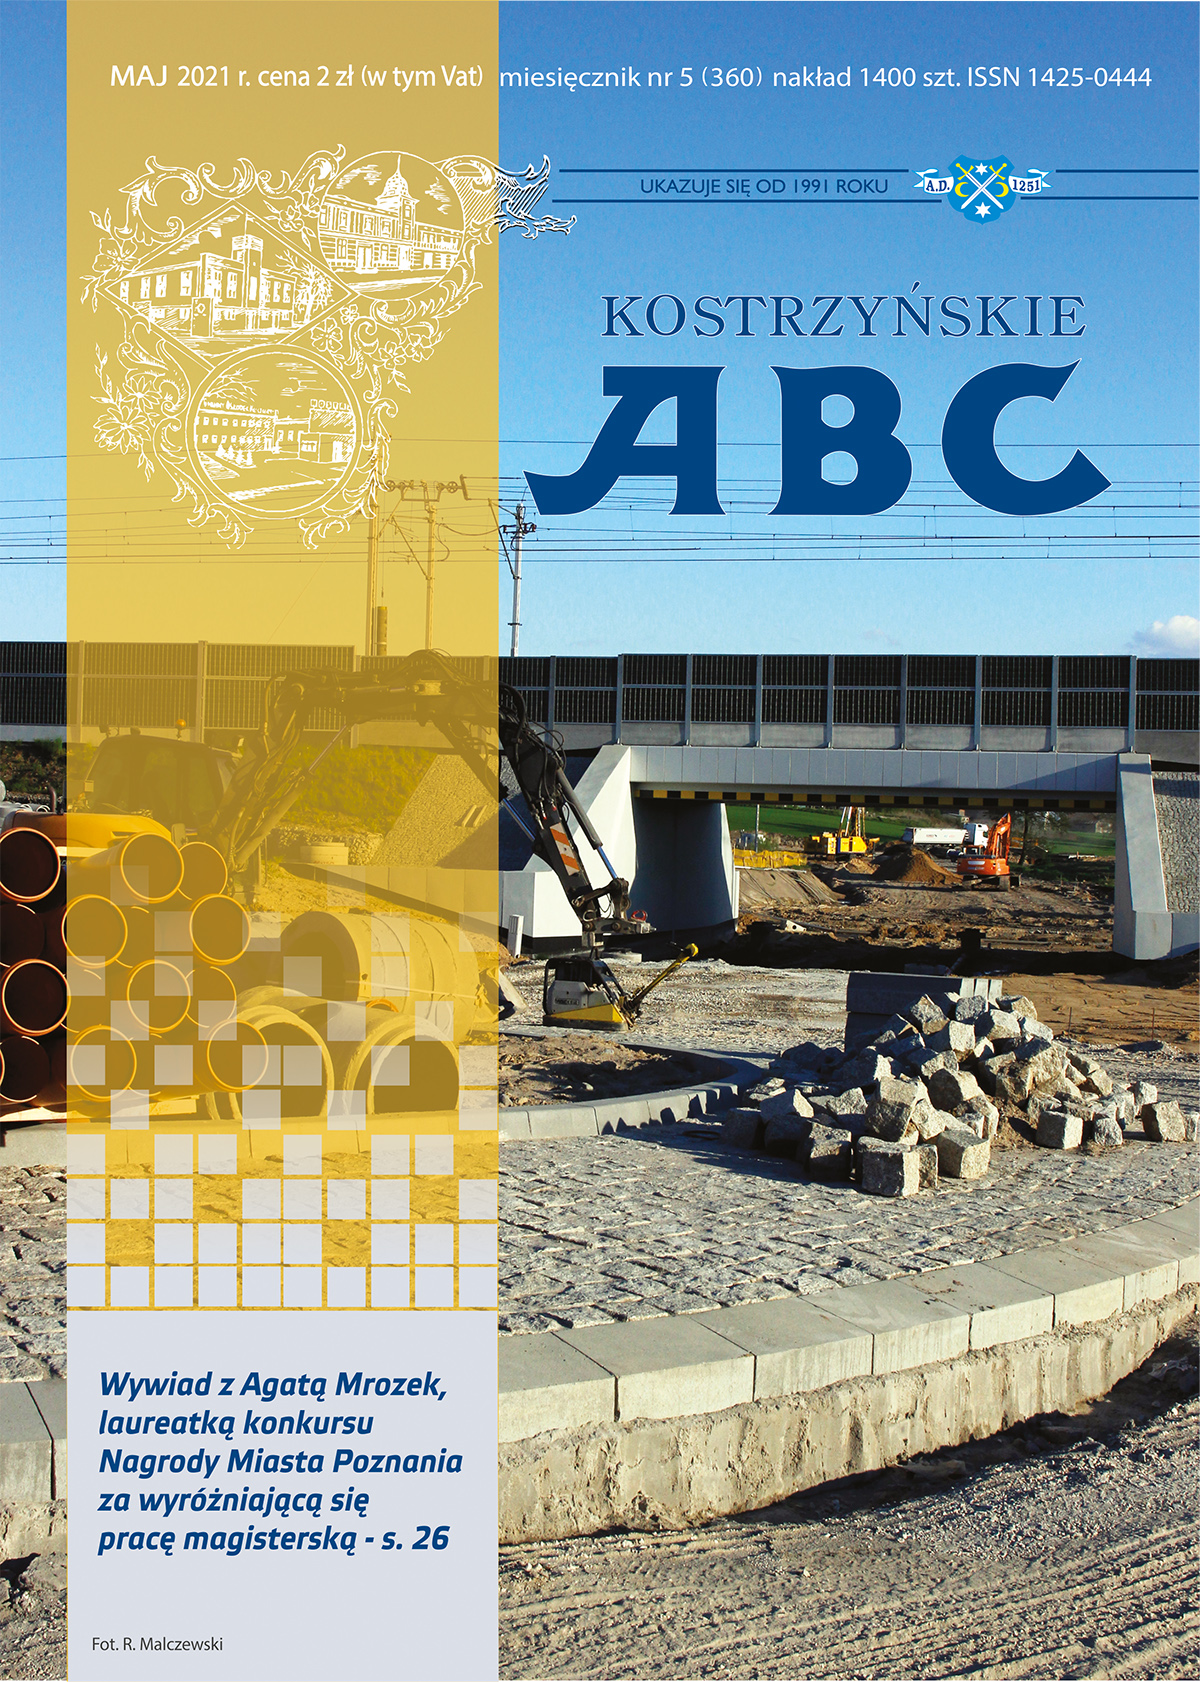 Okładka majowego wydania ABC, przedstawia budowę tunelu